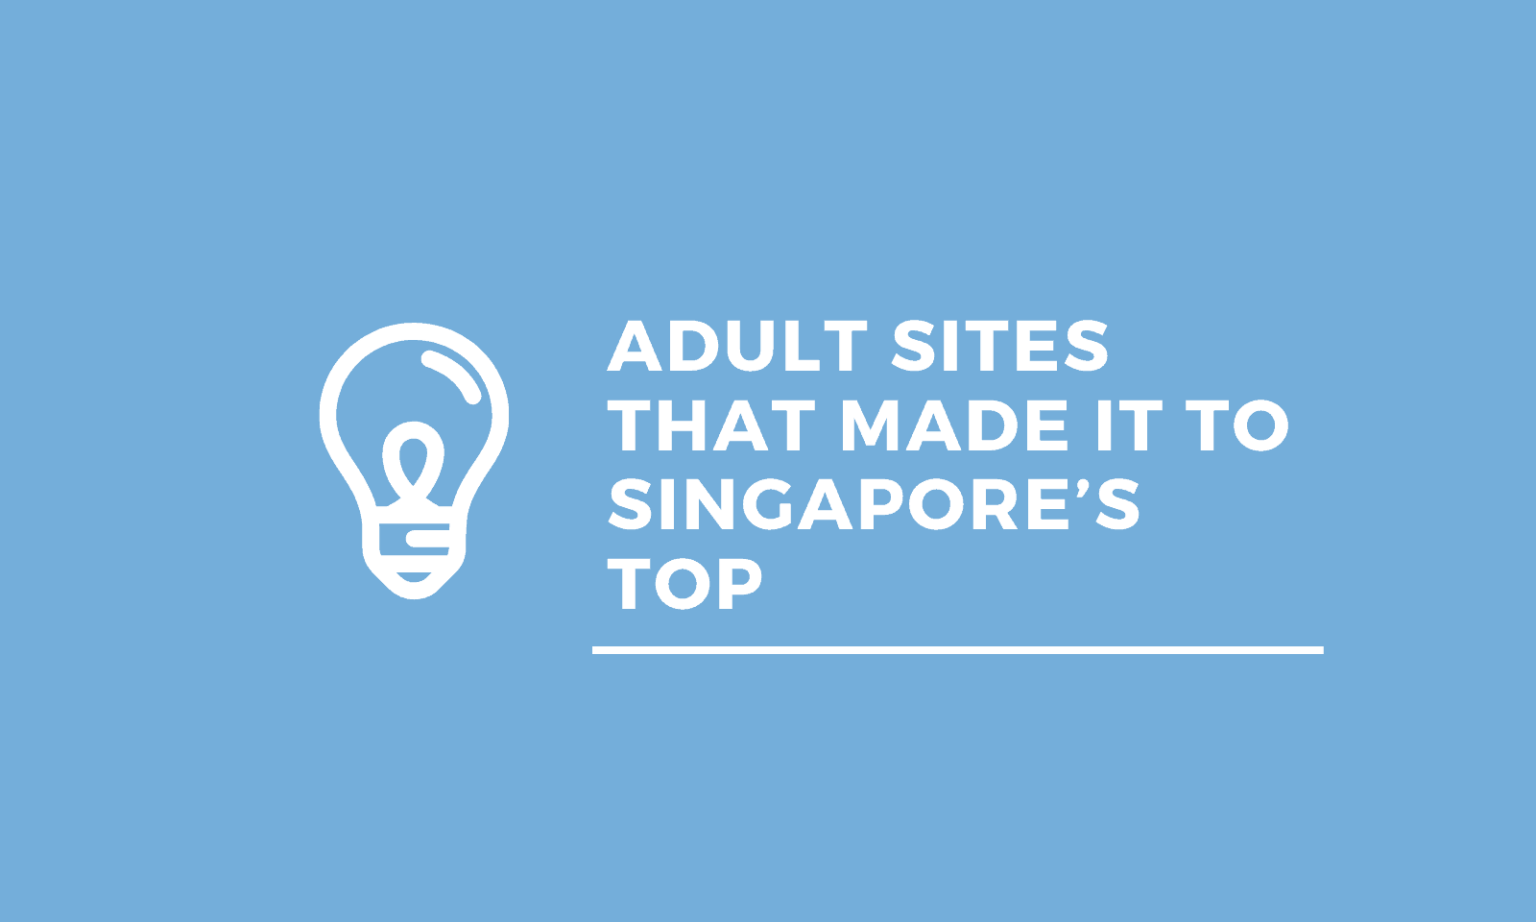 Situs Dewasa Yang Bisa Dibuka. Situs Dewasa Berhasil masuk ke 50 Situs Paling Banyak Dikunjungi di Singapura